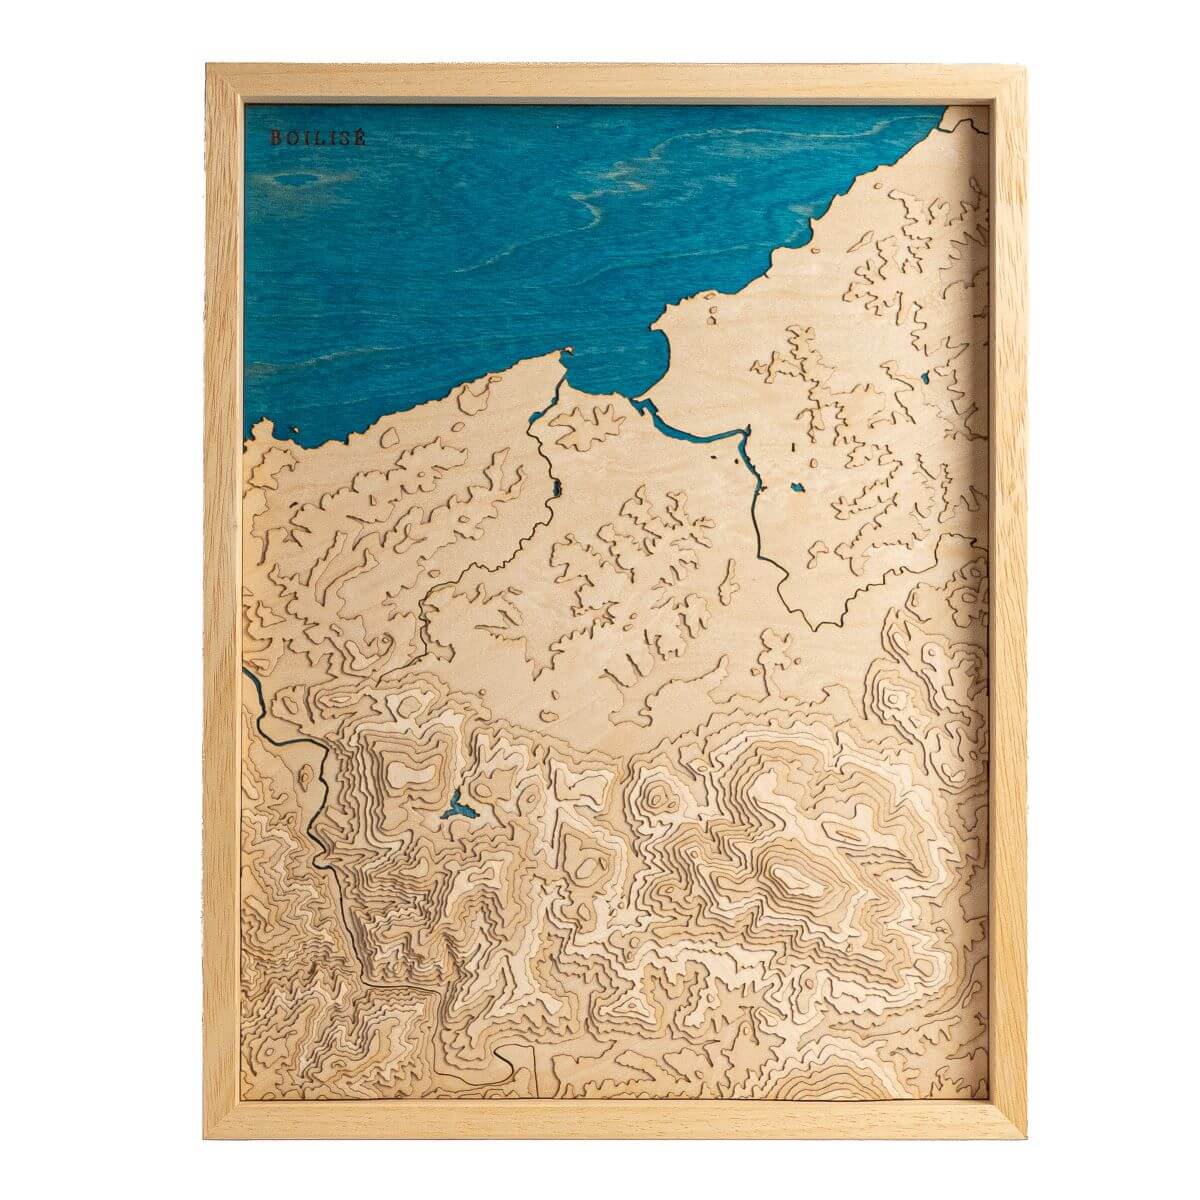 Tableau de la côte du Labourd en relief avec une eau bleue marine